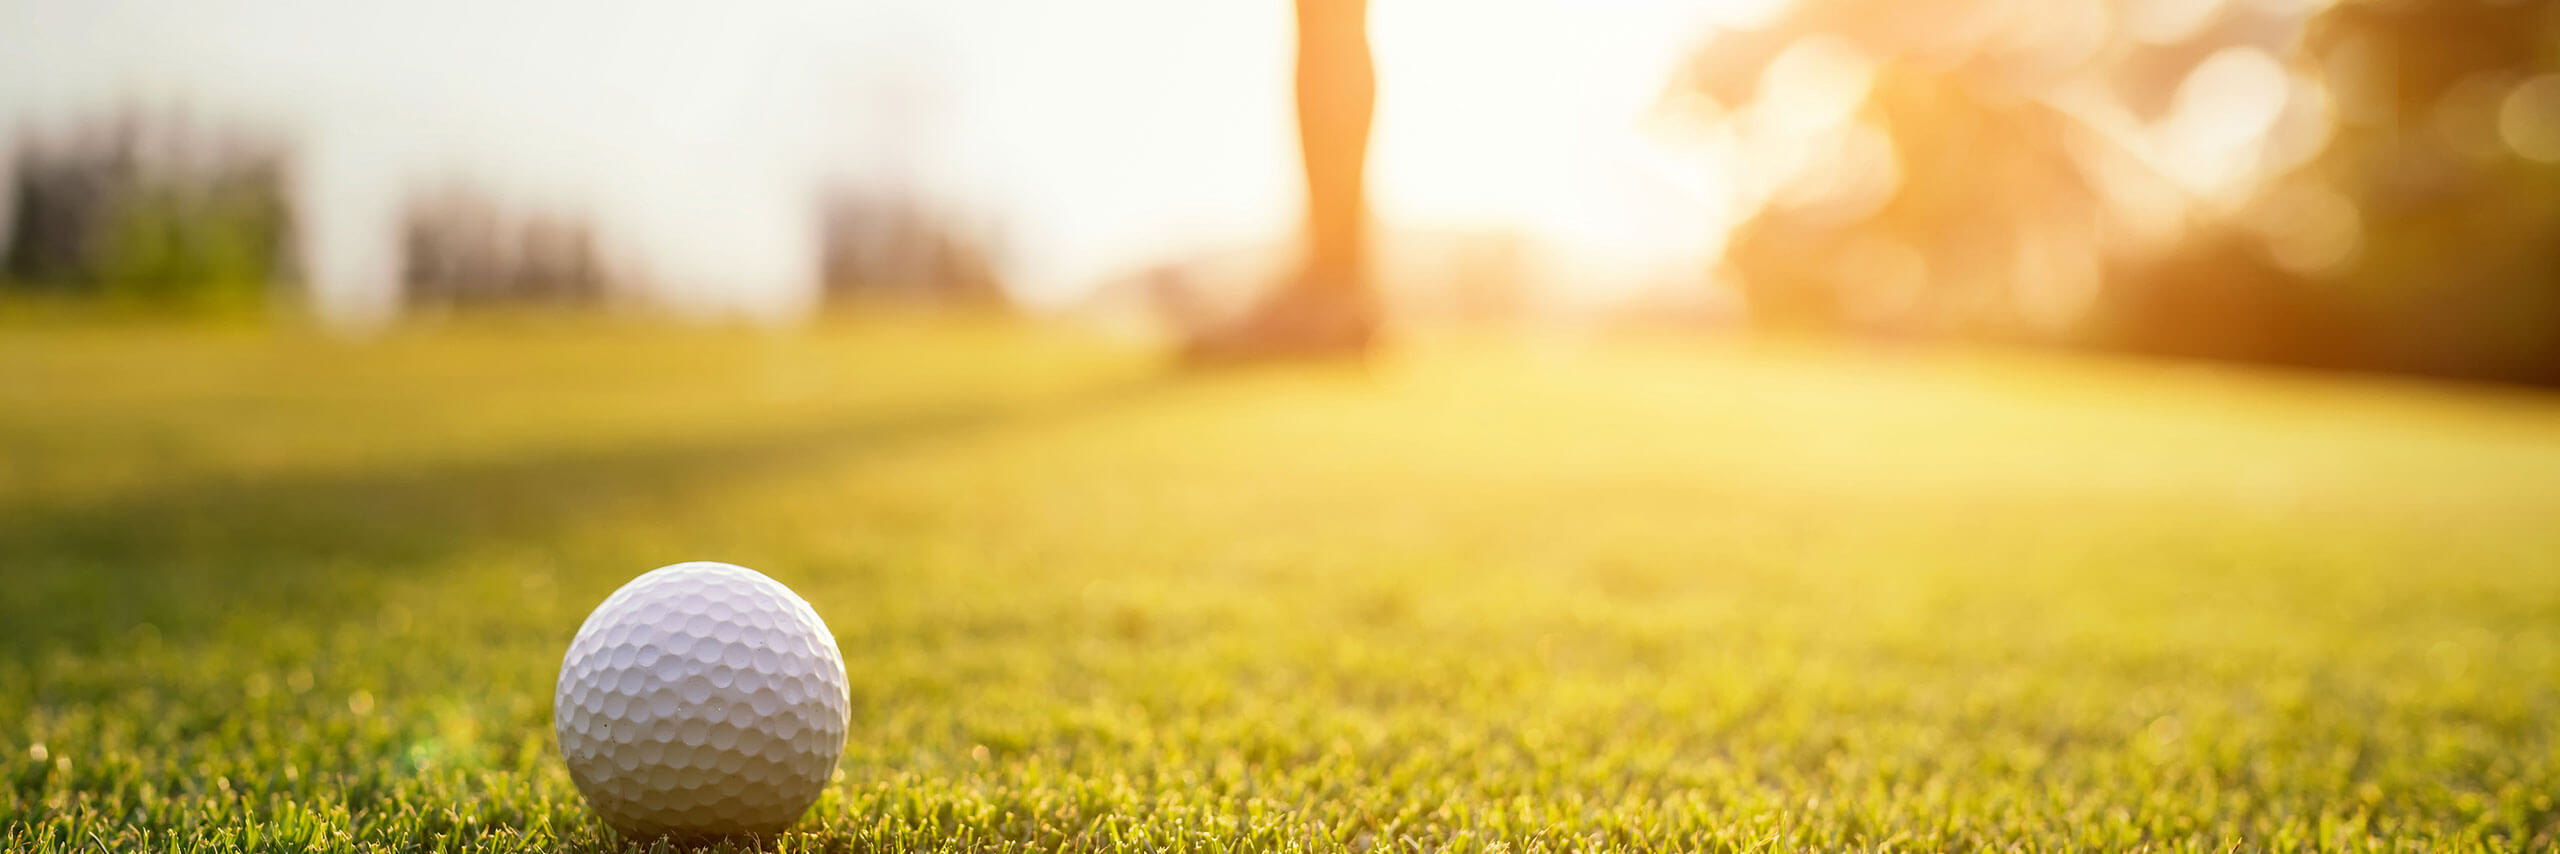 Golfball liegt auf grünen Rasen eines Golfplatzes